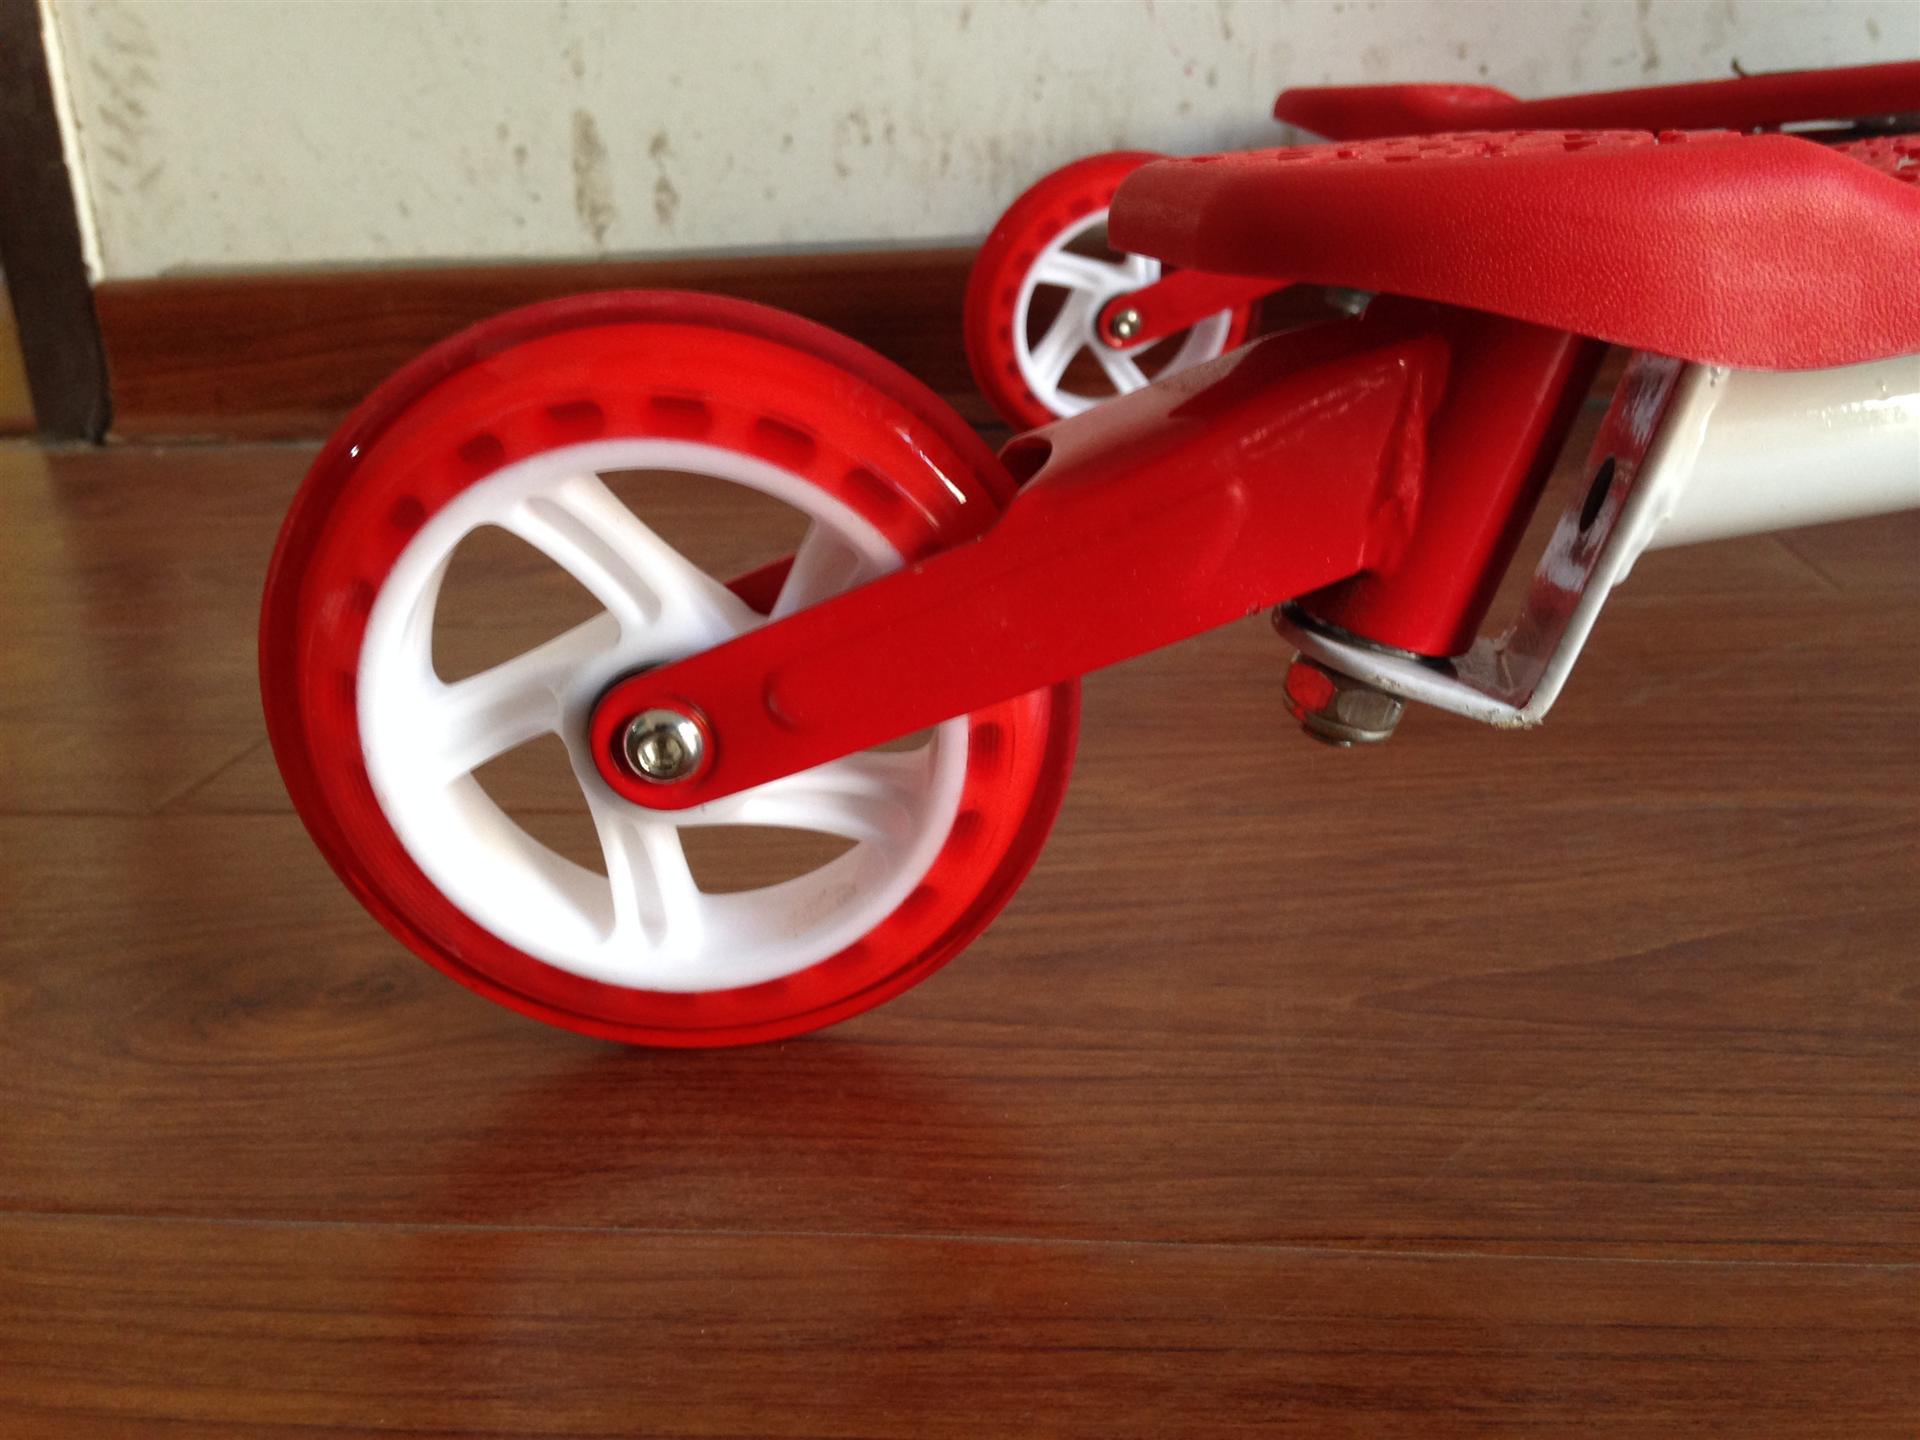 蛙式车 扭扭车 儿童款 黄色 外观精美 产品类别:脚踏滑板车 车轮材质